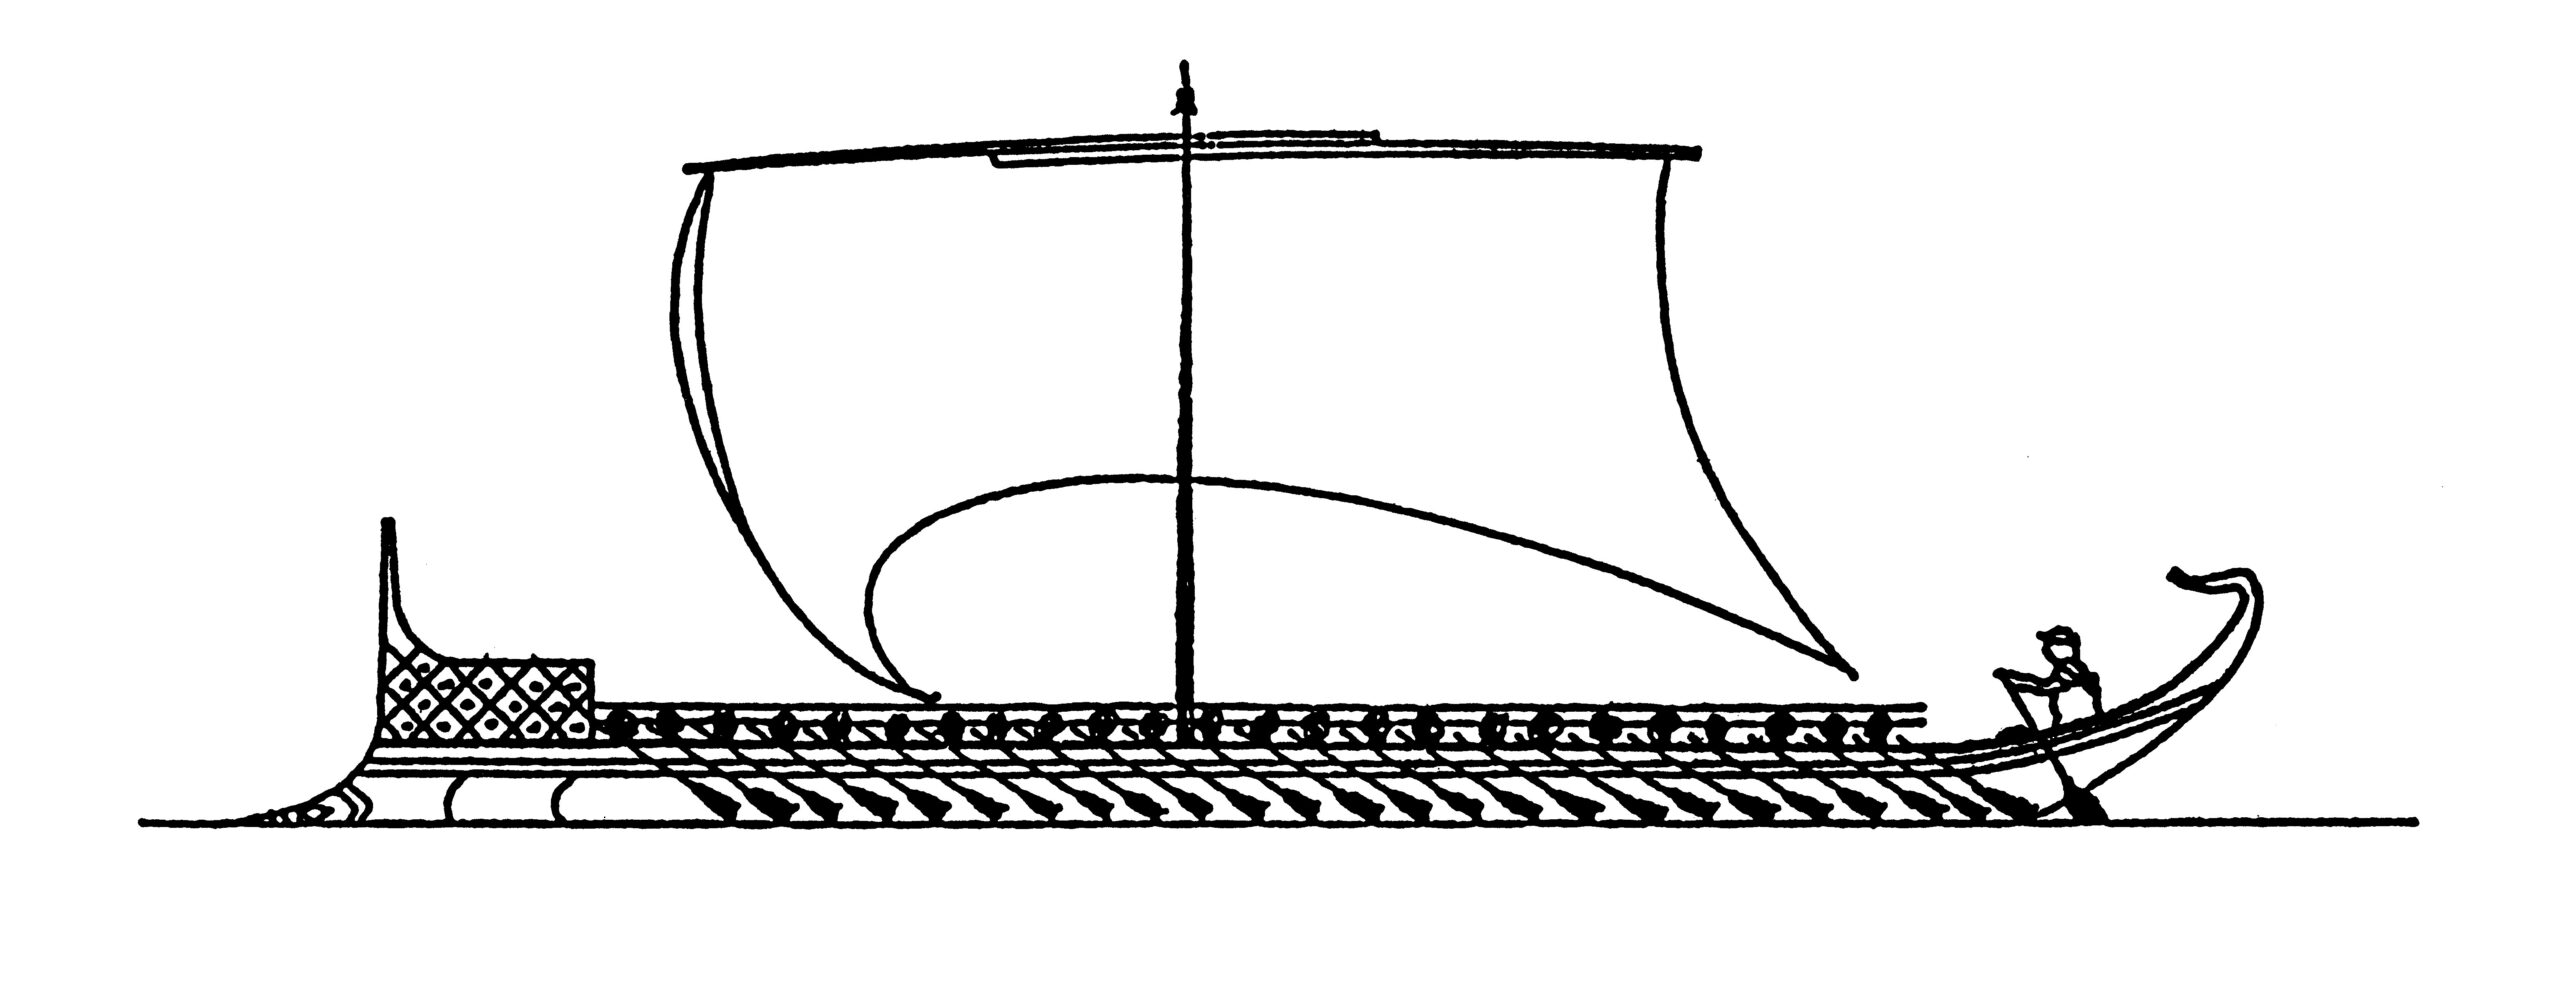 Δίολκος πλοία στην αρχαιότητα (1)